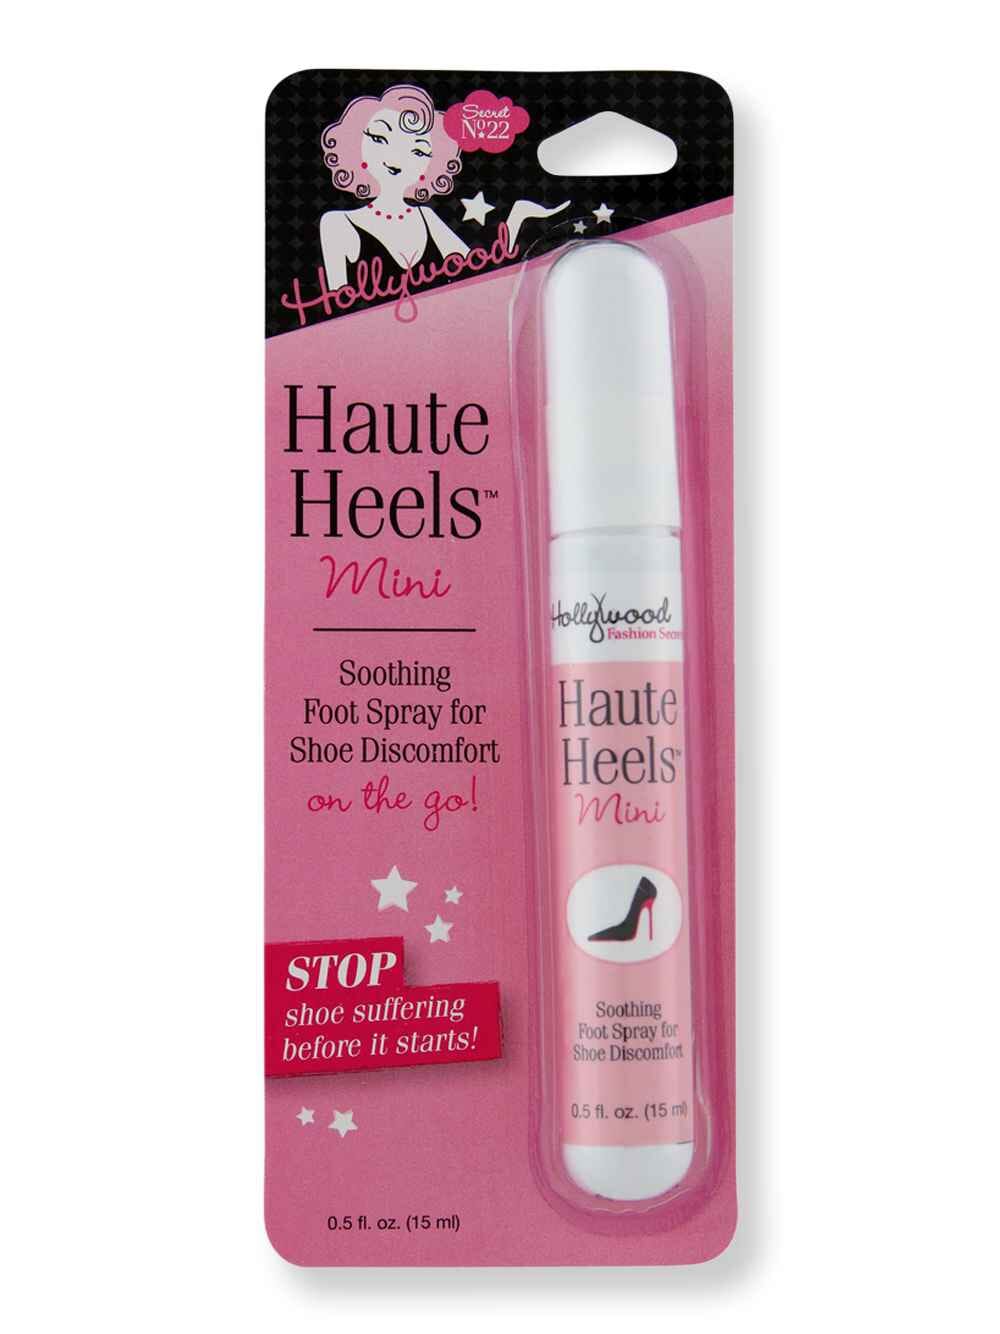 Hollywood Fashion Secrets Hollywood Fashion Secrets Haute Heels Mini Pack 0.5 oz Foot Creams & Treatments 